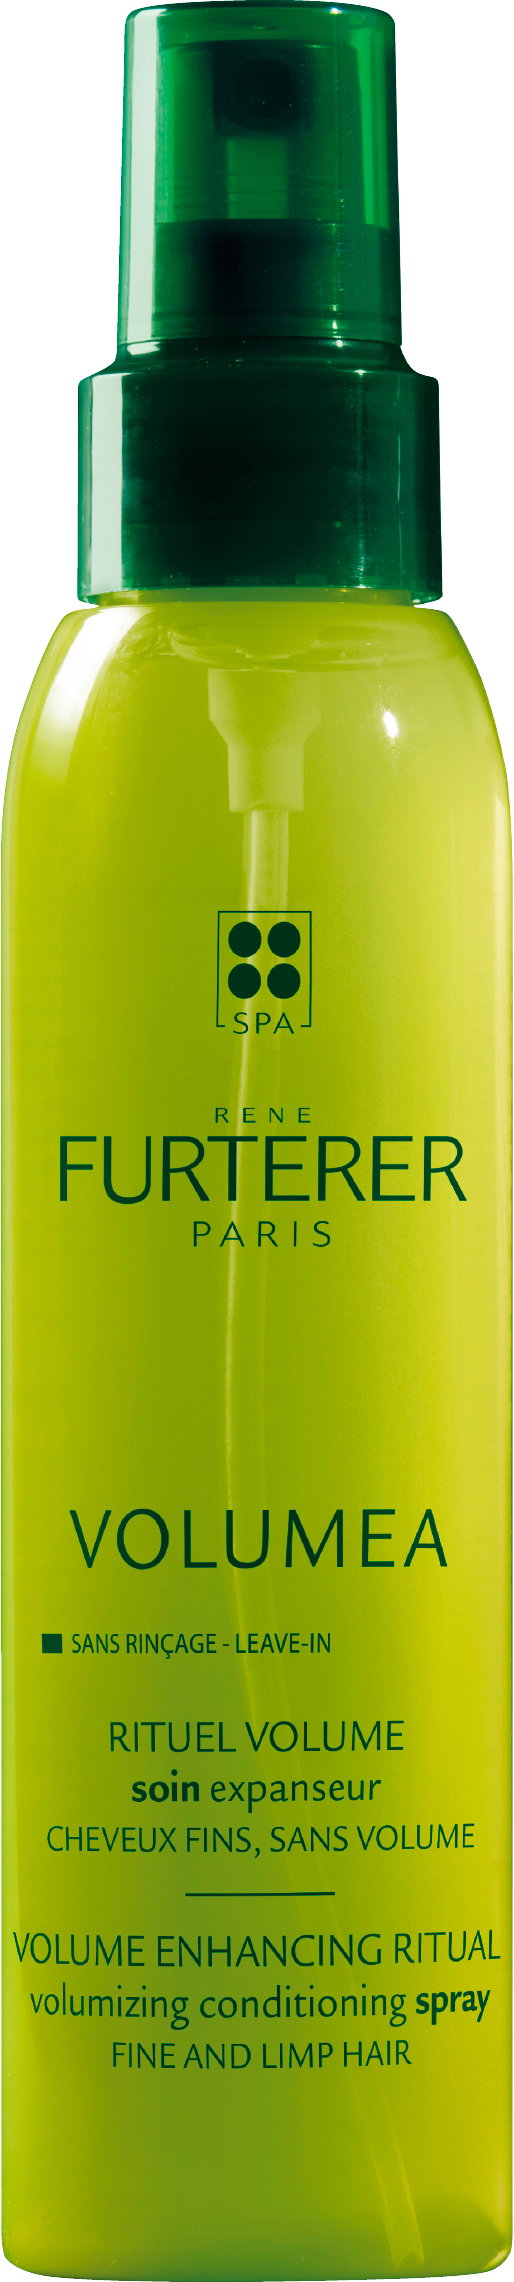 Odżywka w sprayu Rene Furterer Volumea zwiększająca objętość włosów 125 ml (3282770106527). Odżywki do włosów